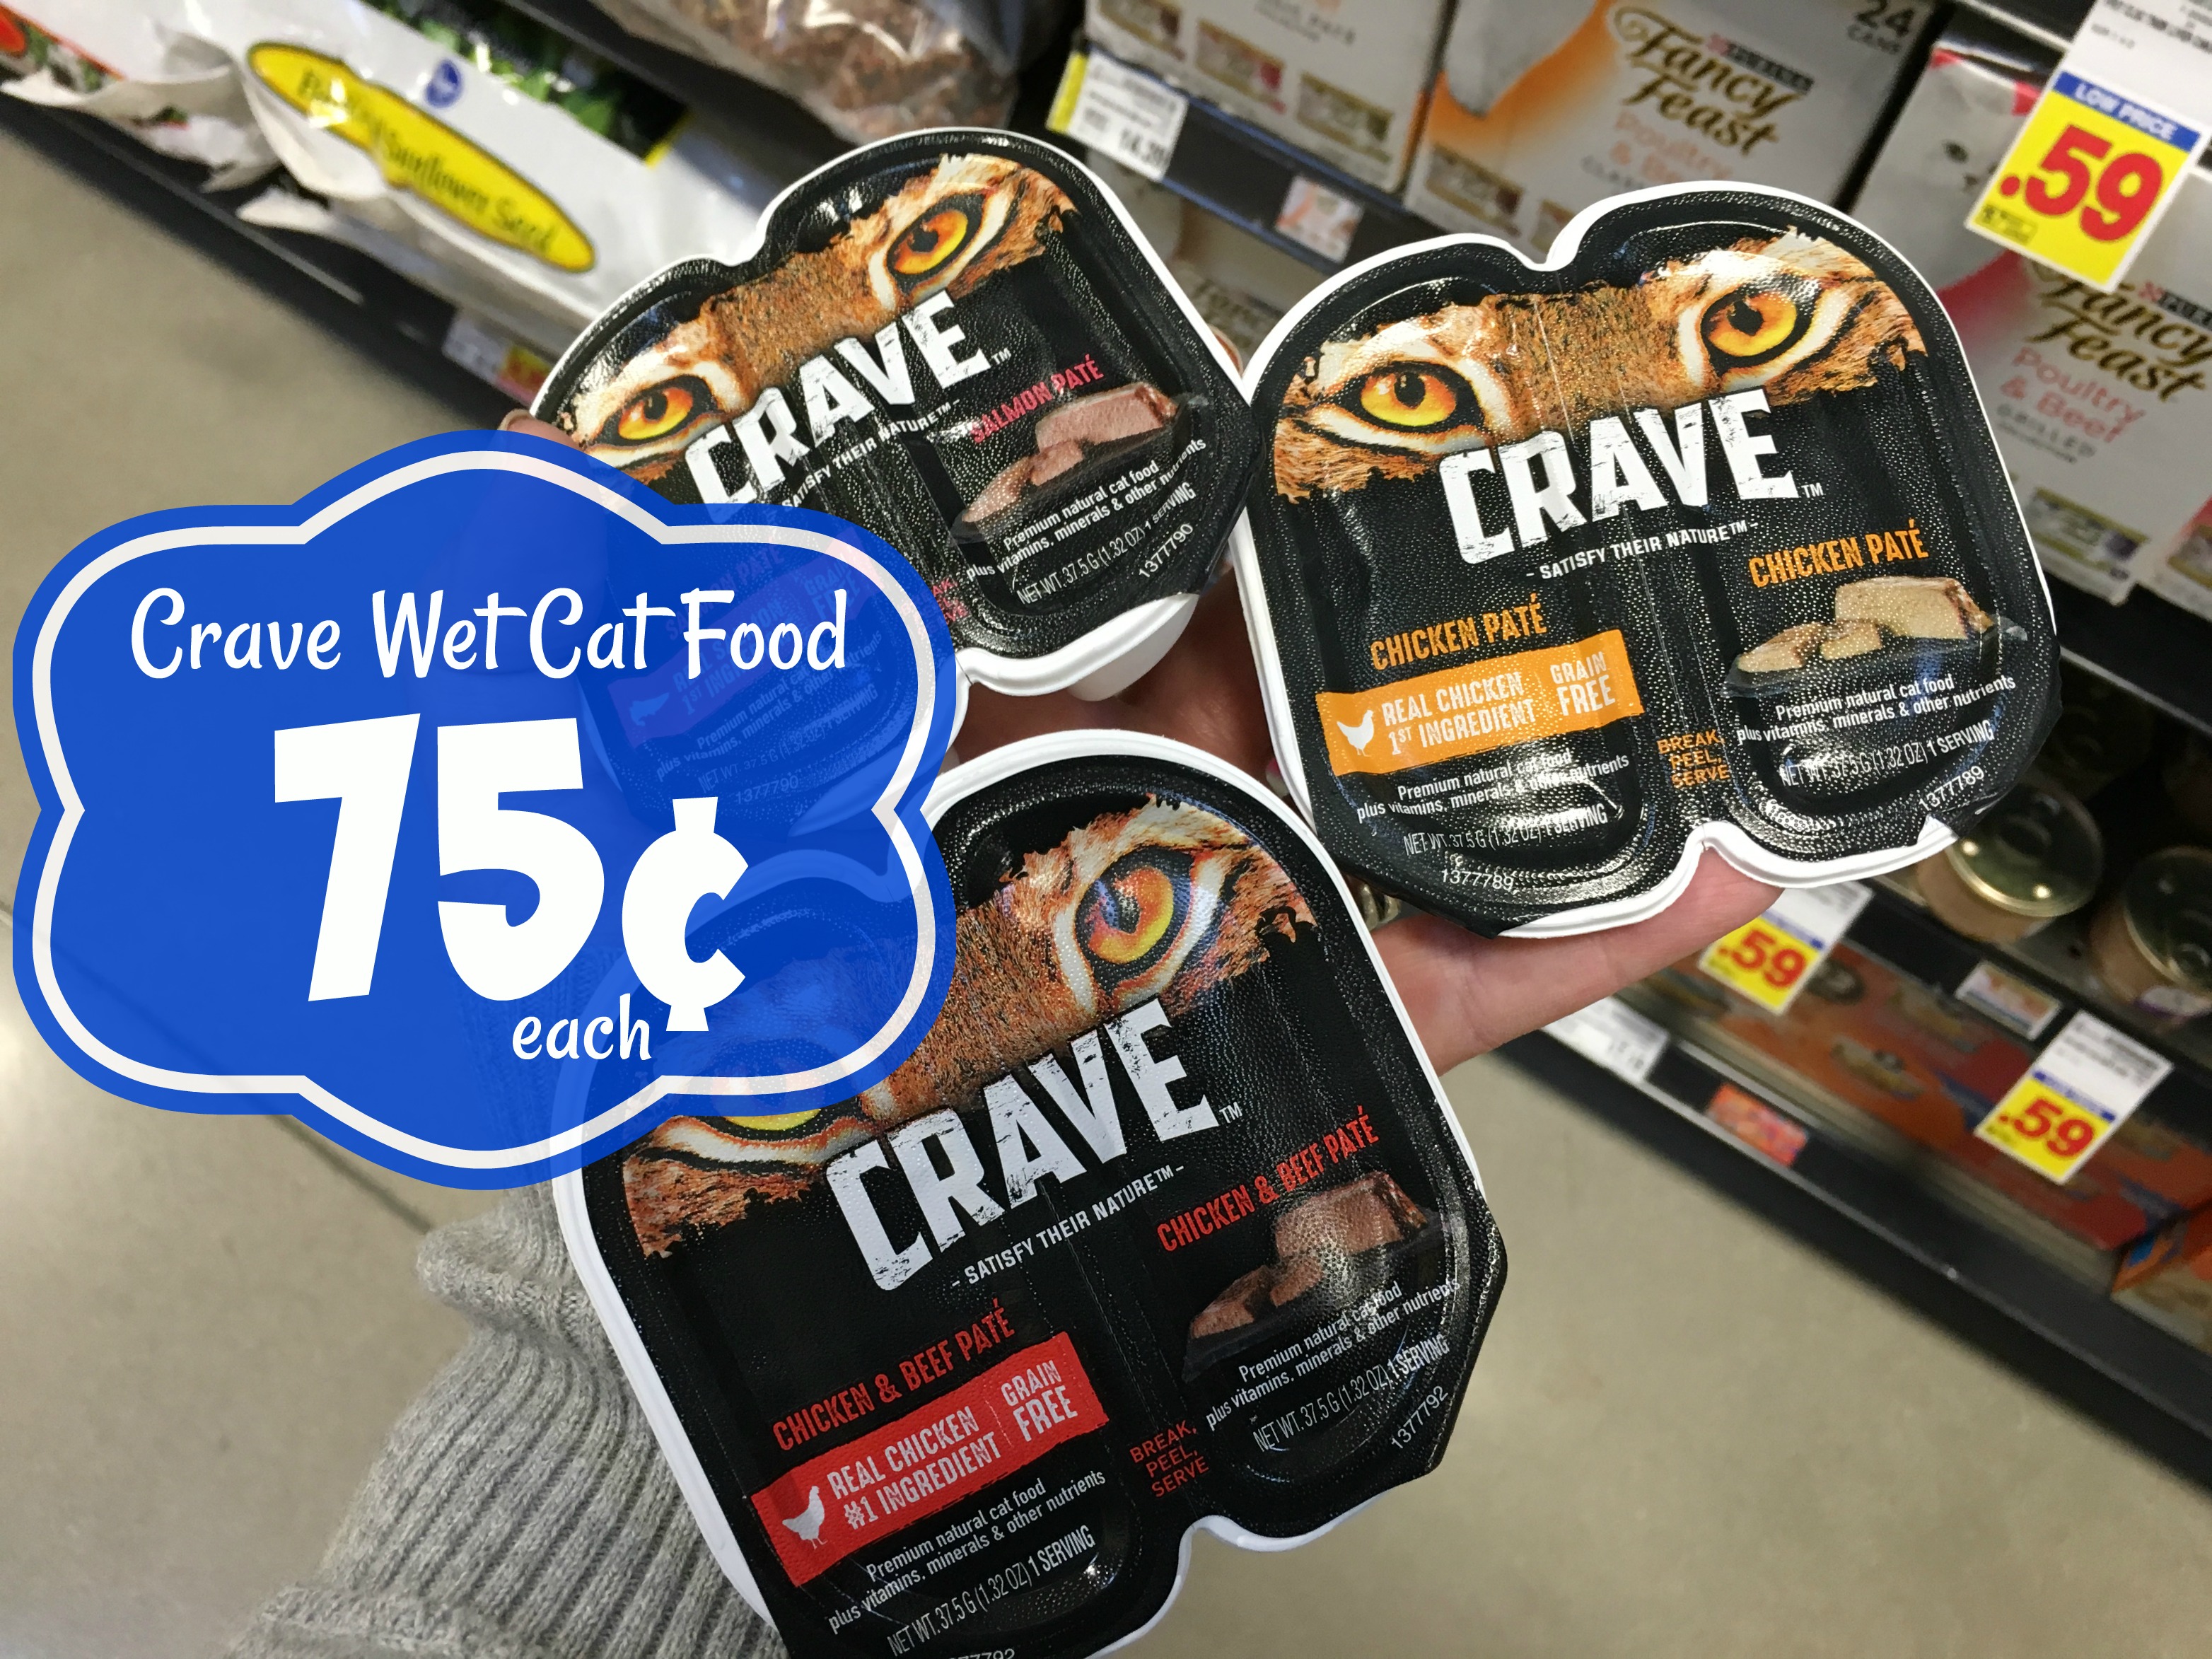 CRAVE Wet Cat Food JUST 0.75 each at Kroger! Kroger Krazy